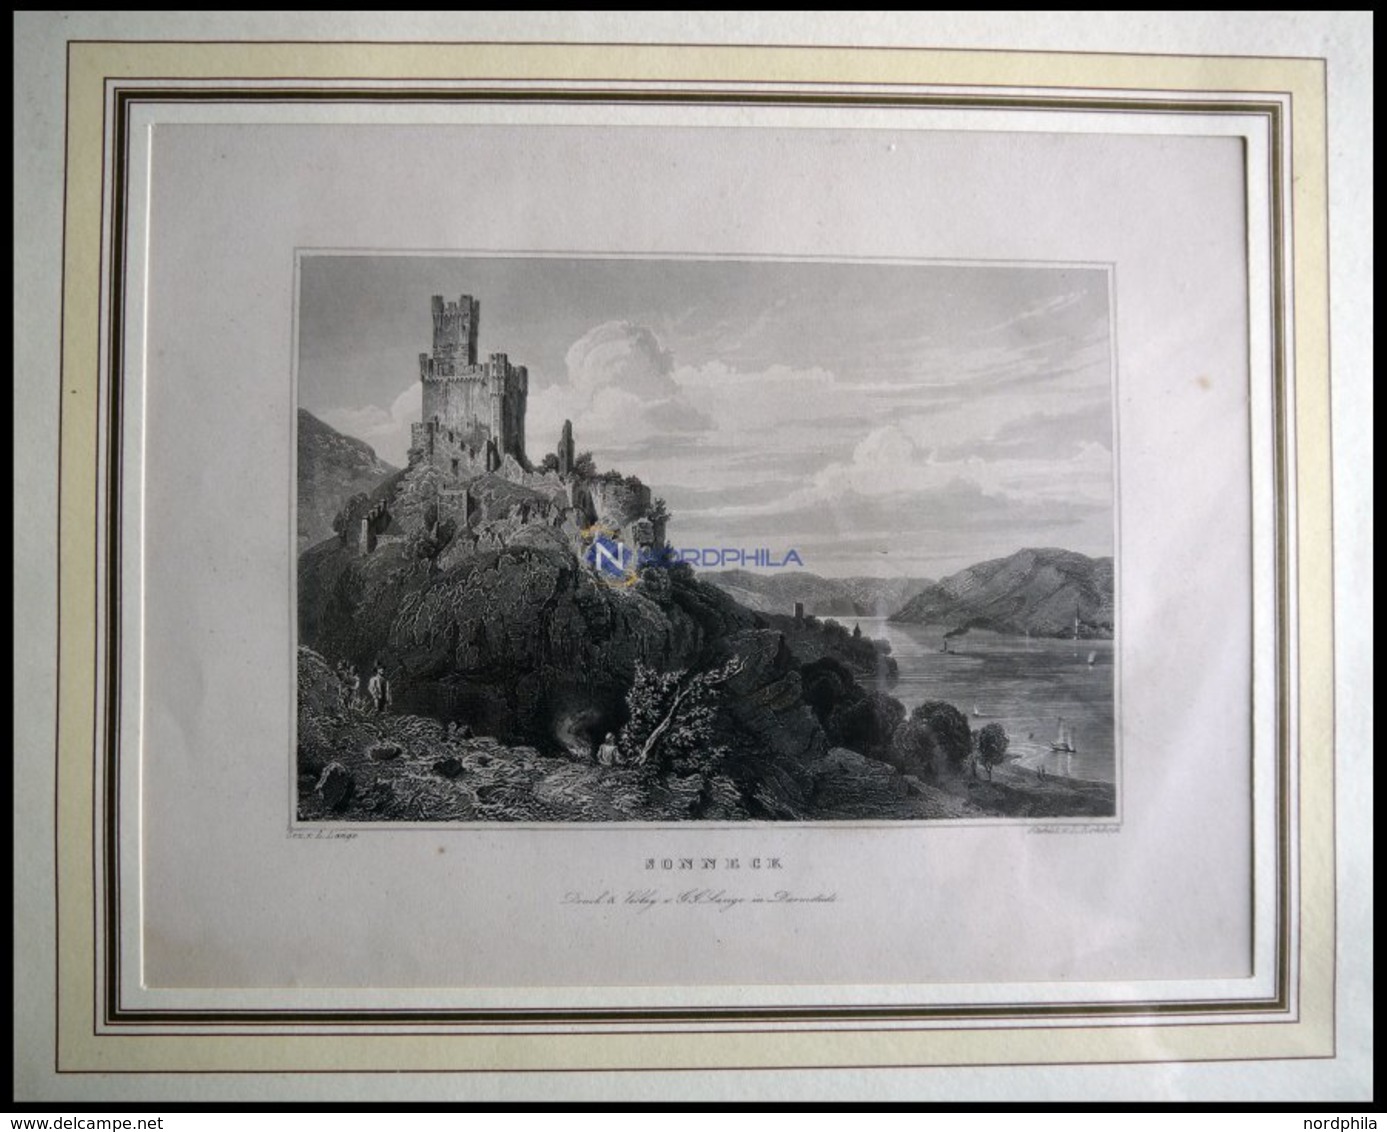 SONNECK, Gesamtansicht Stahlstich Von Lange/Rohbock Um 1840 - Lithographies